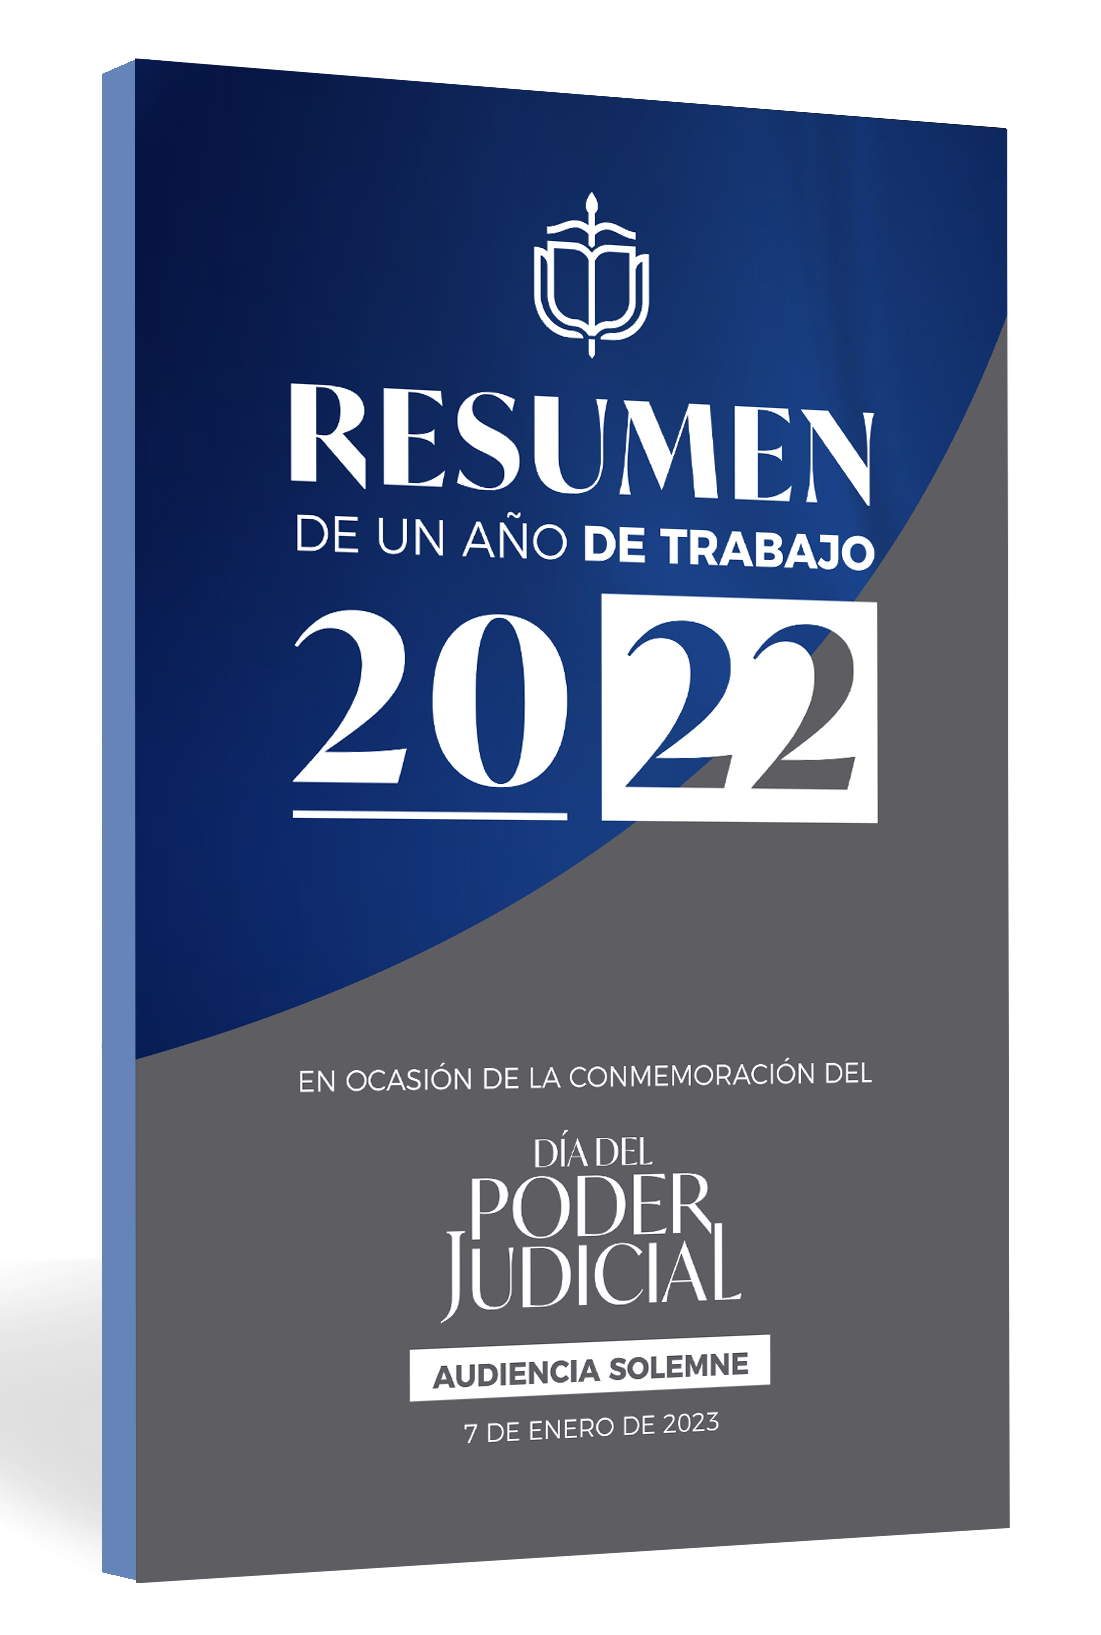 Resumen de un año de trabajo 2022 : en ocasión de la conmemoración del día del Poder Judicial, audiencia solemne 7 enero 2023